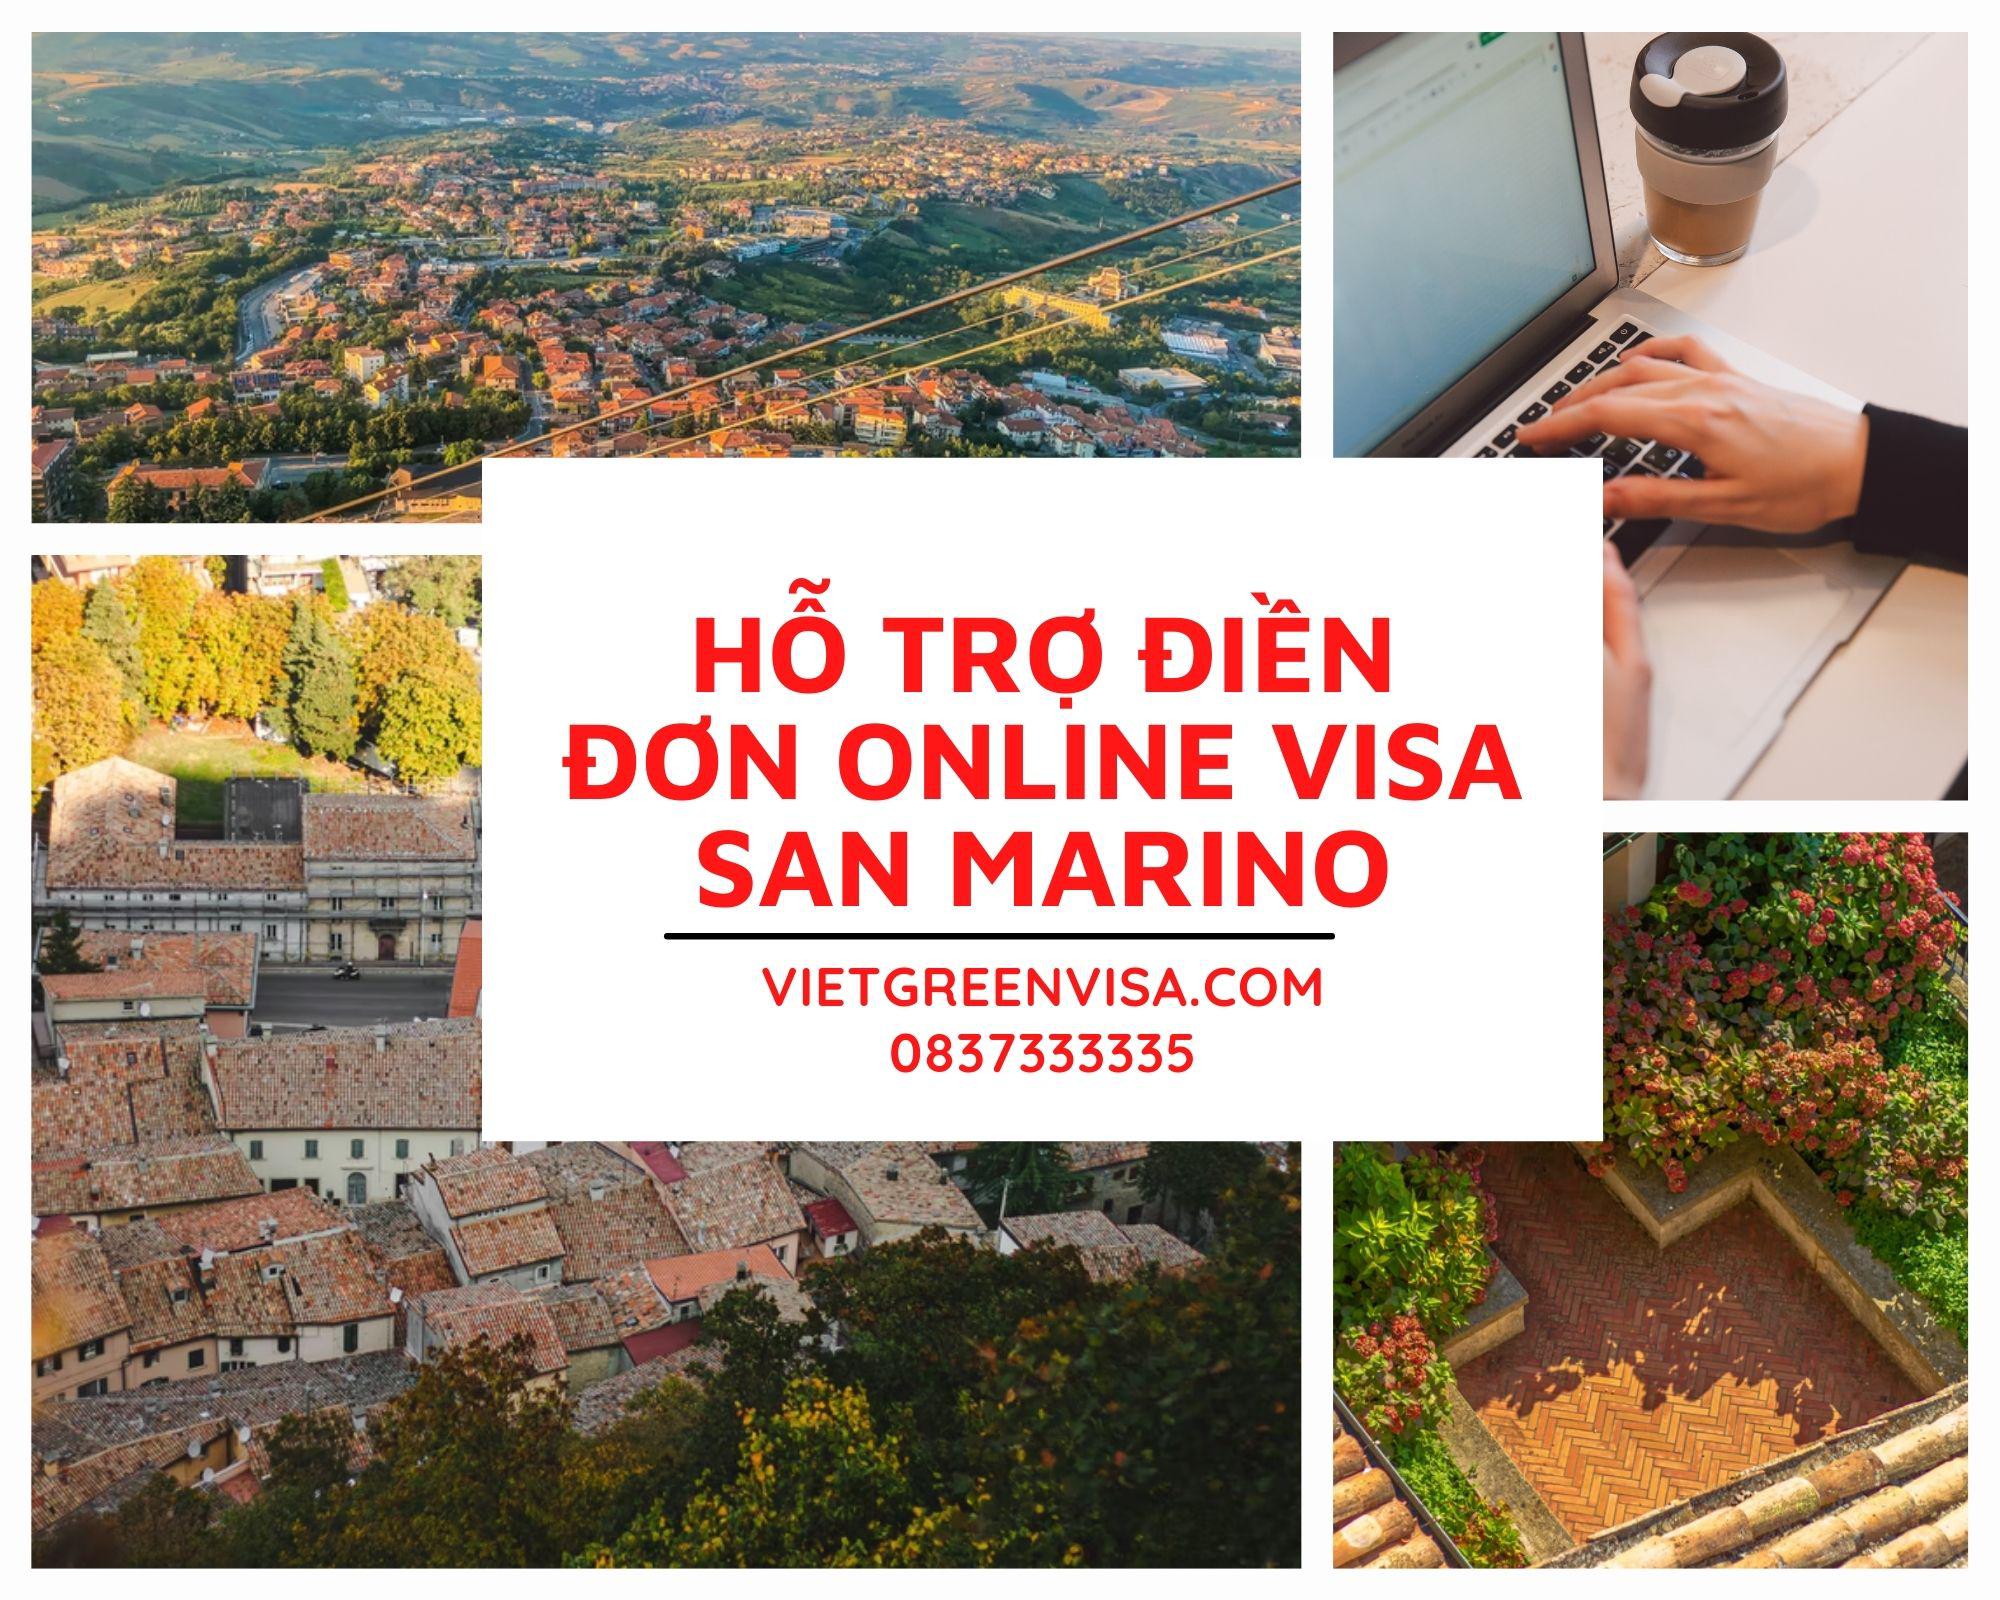 Tư vấn điền đơn visa San Marino online nhanh